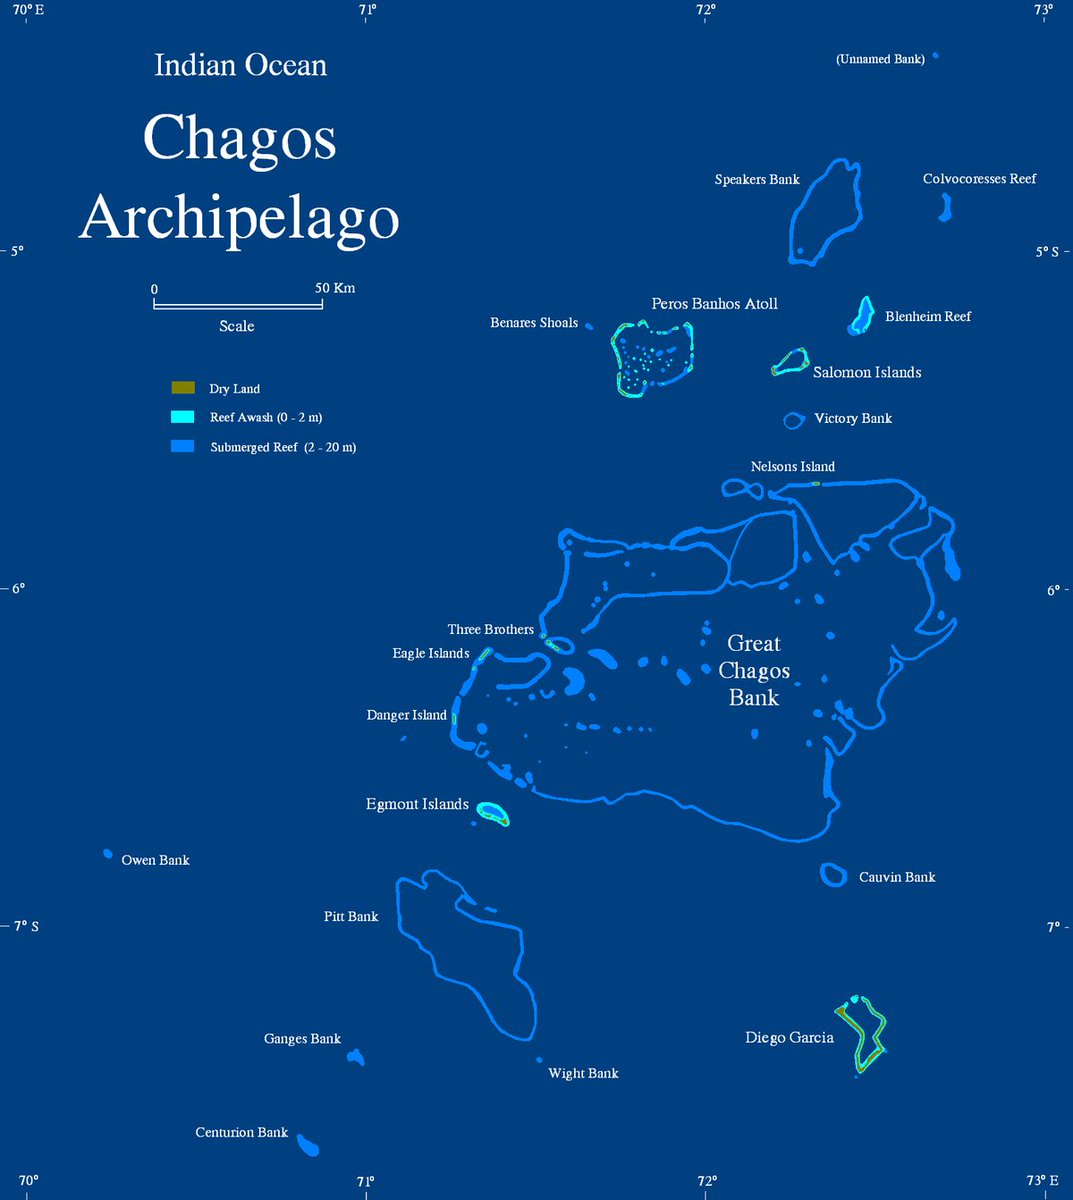 L'archipel des Chagos est un ensemble de 7 atolls d'une superficie de 56 km2, comprenant plus de 60 îles tropicales, situé au plein coeur de l'Océan Indien. Il est entouré par les Maldives au nord, les Seychelles à l'ouest et l'île Maurice au sud-ouest.